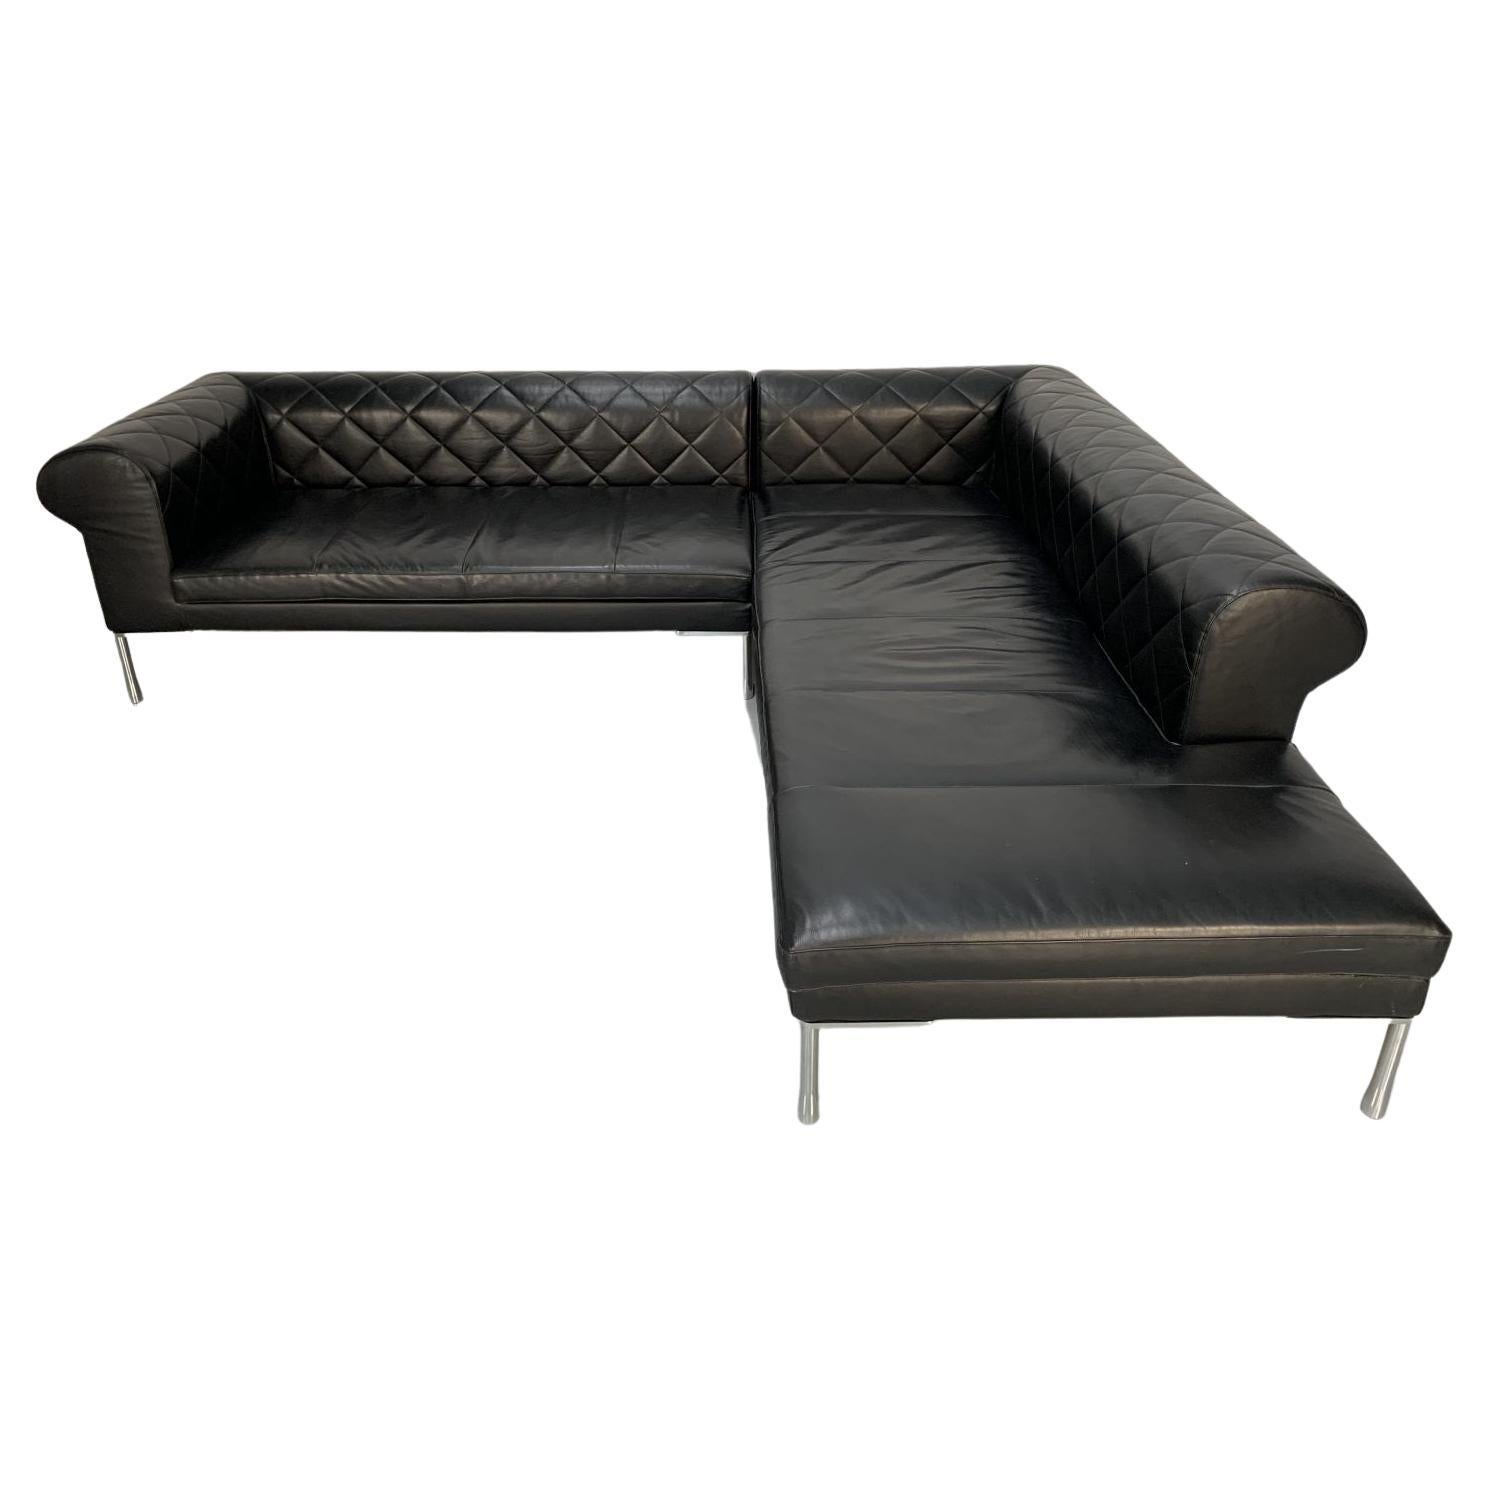 Zanotta “1320 Barocco” Sofa, L- Shape 5-Seat, in Black “Pelle” Leather